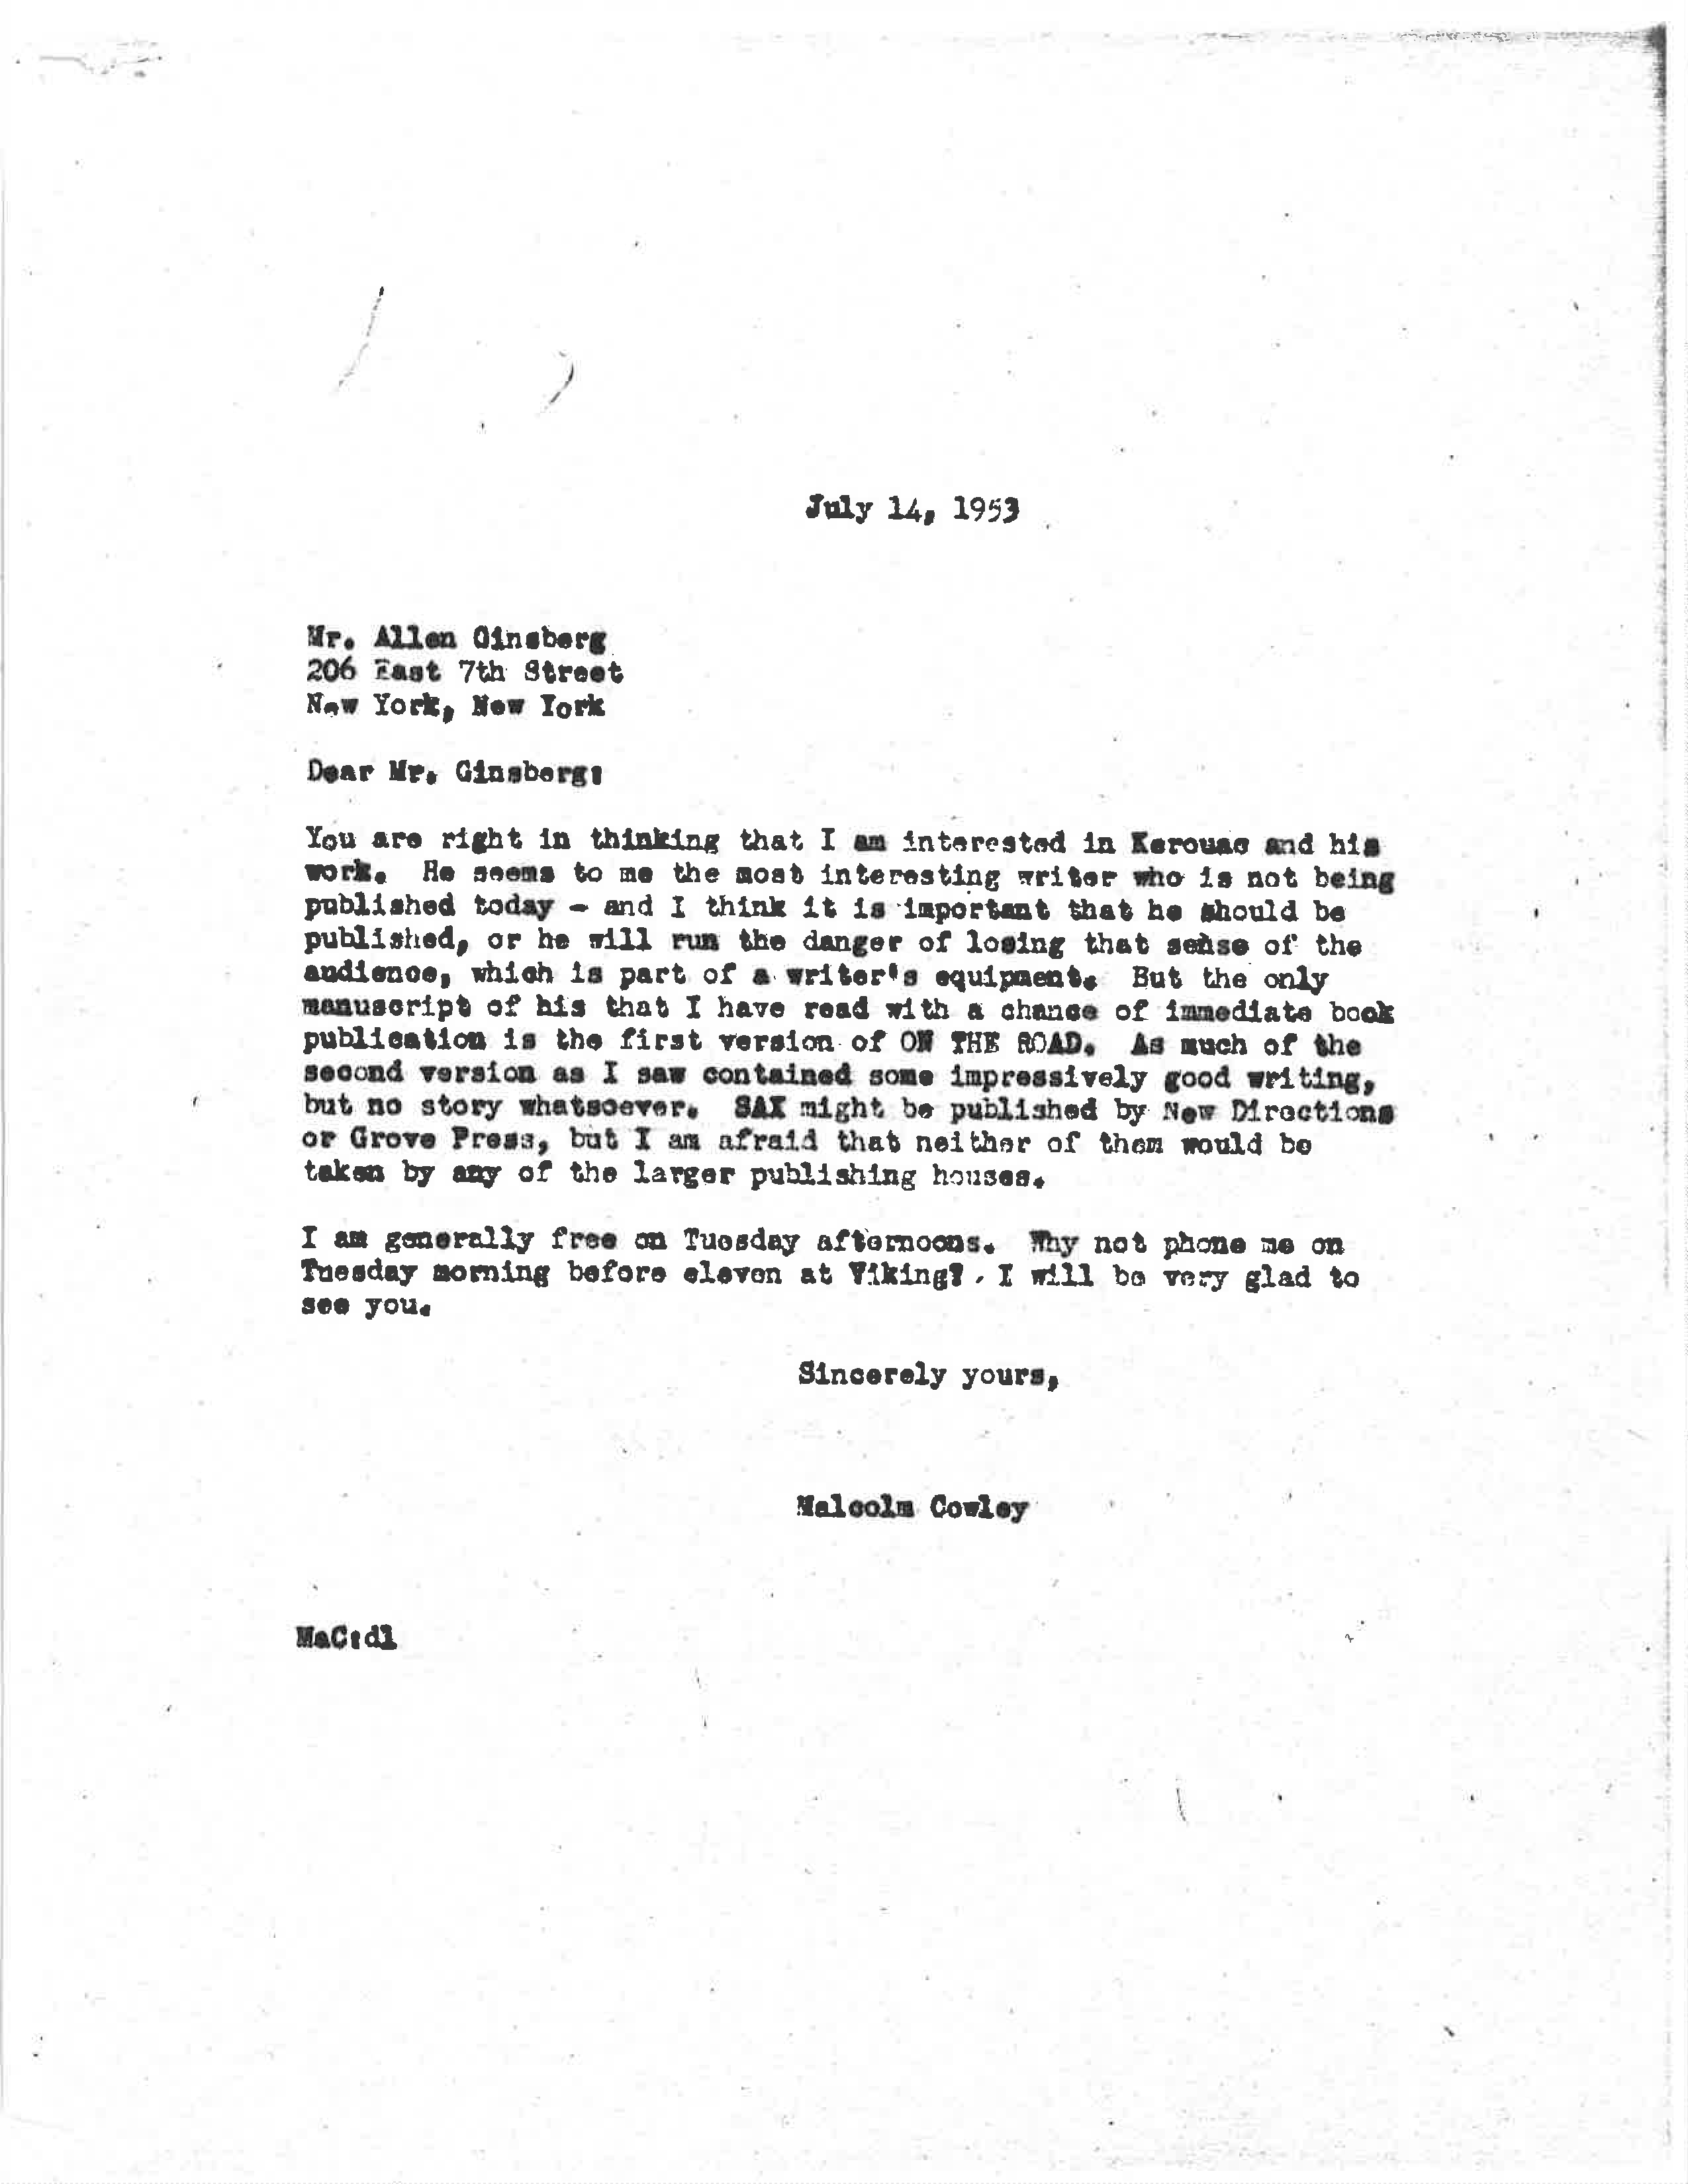 Lettre de 1953 du conseiller éditorial de longue date de Viking Malcolm Cowley à Allen Ginsberg indiquant l'intérêt de Viking pour Kerouac